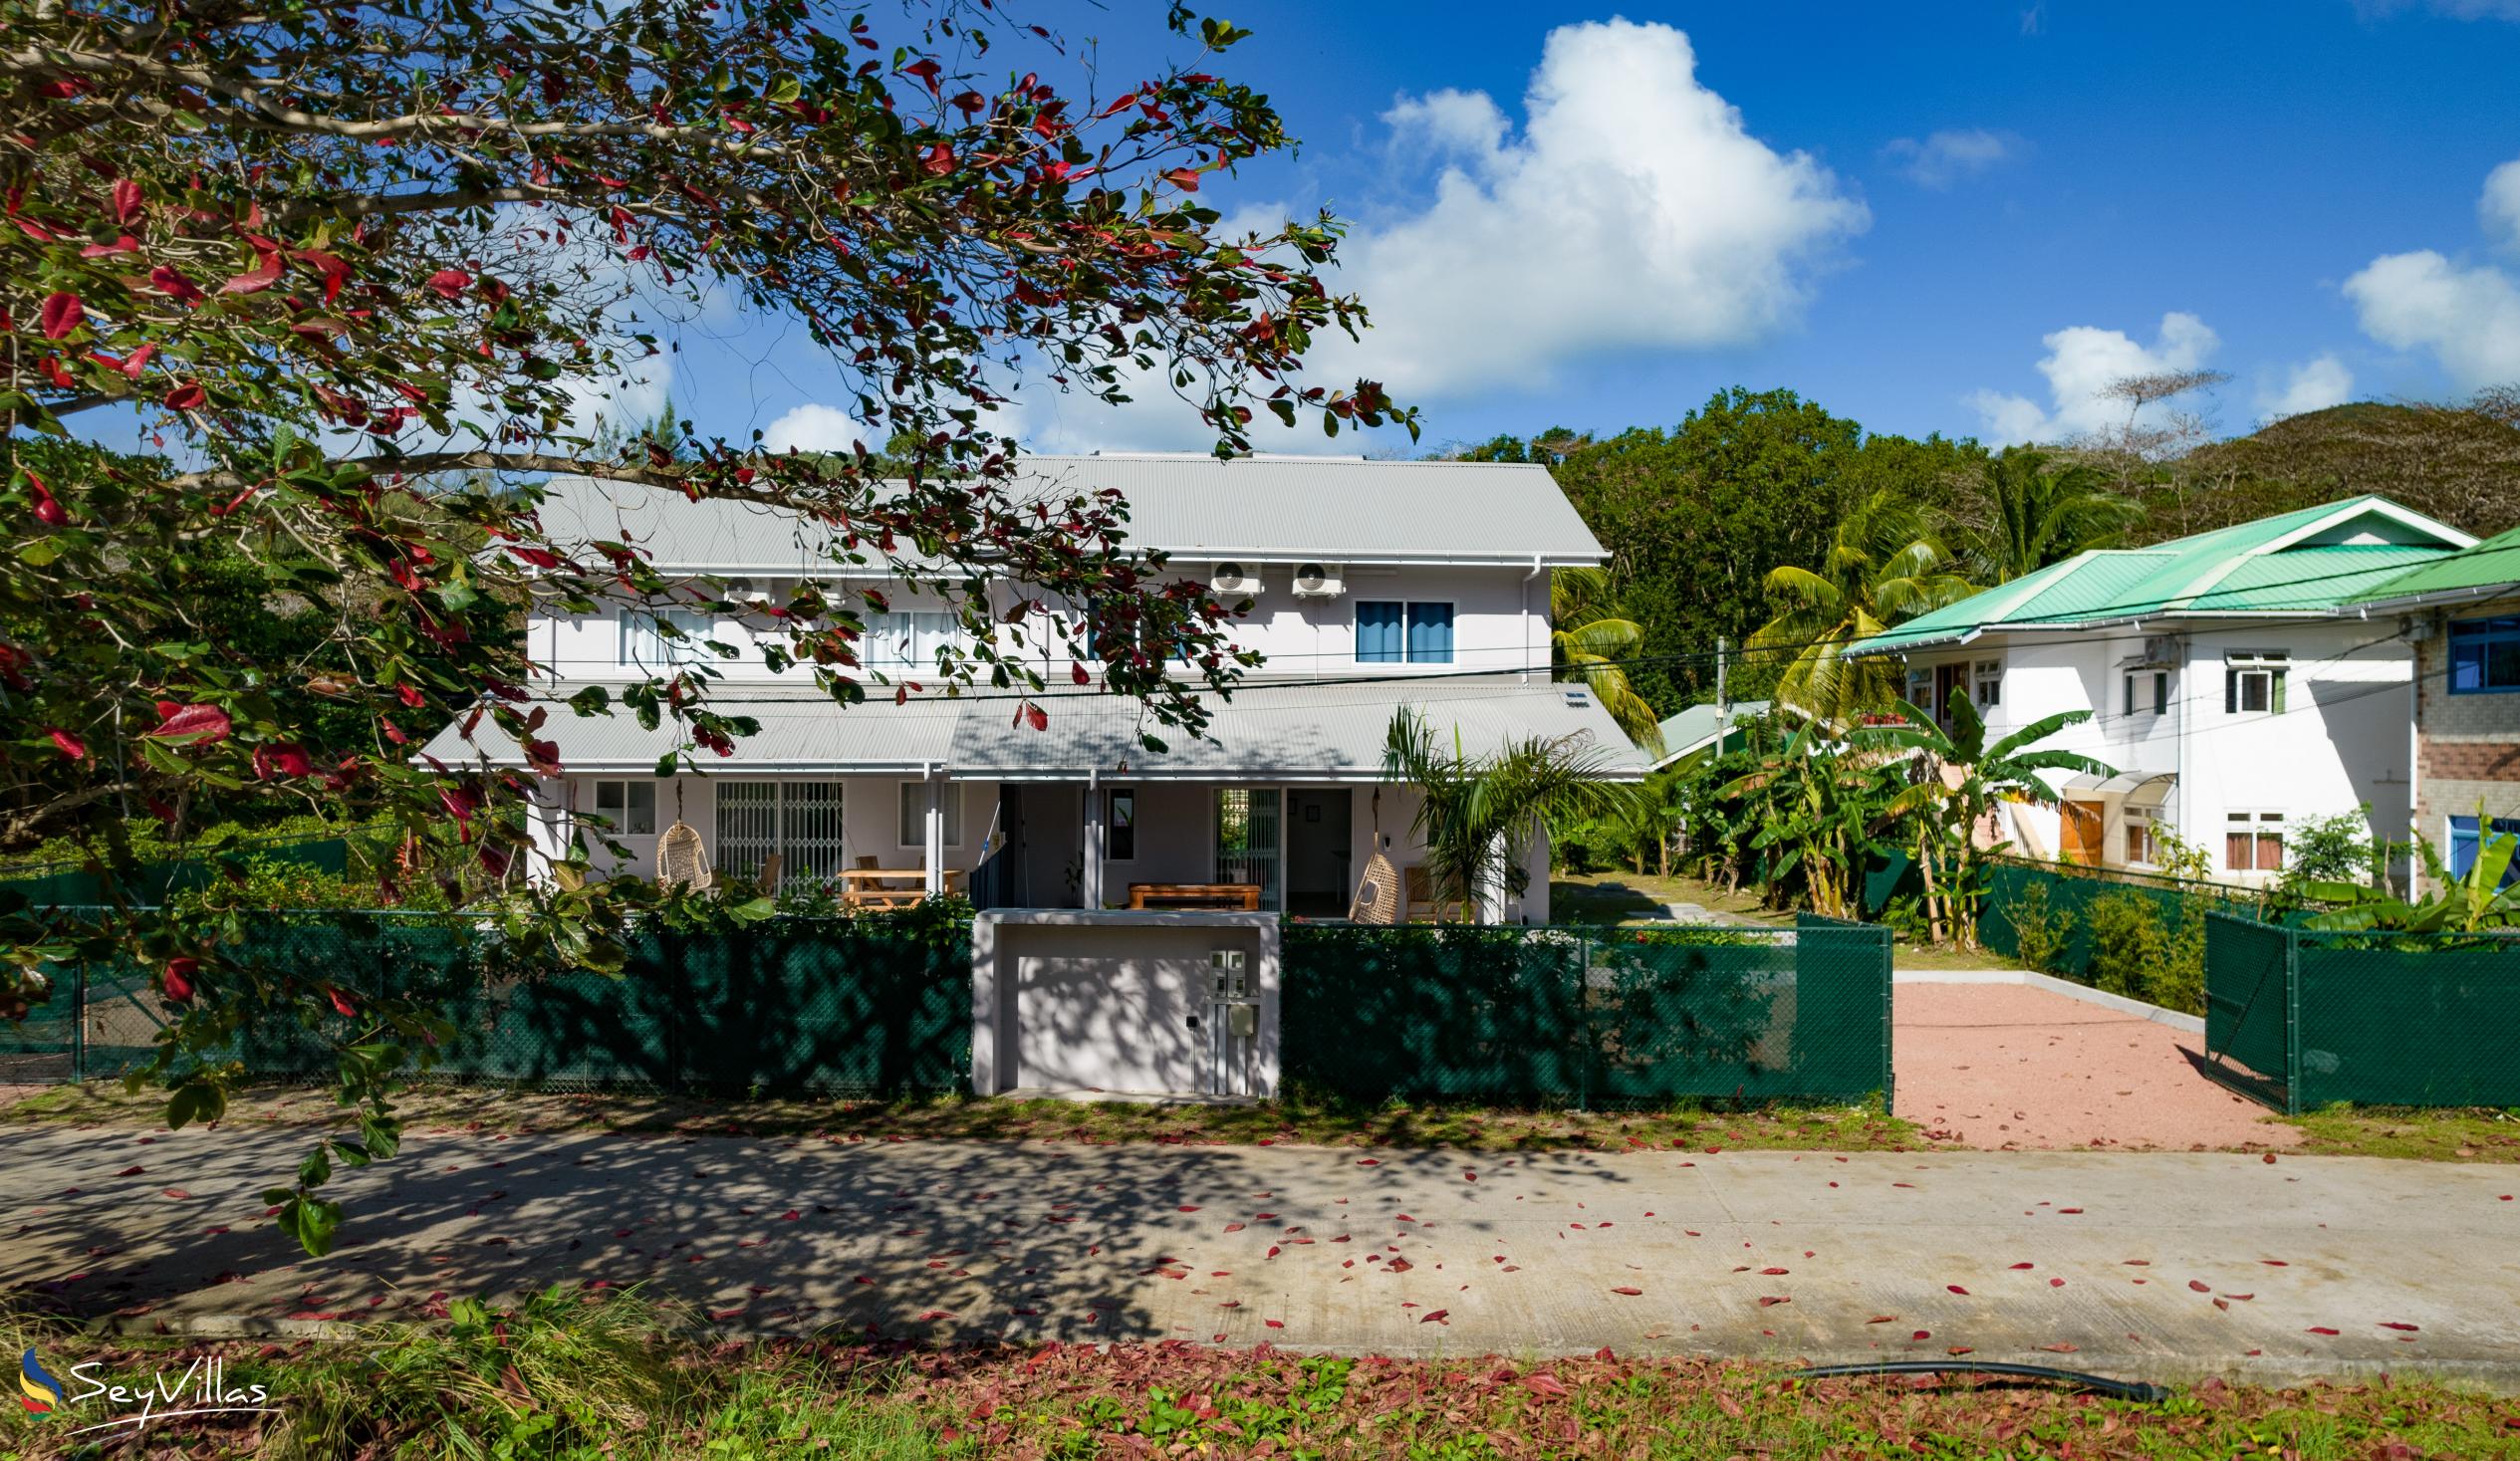 Foto 13: Maison Marie-Jeanne - Aussenbereich - Praslin (Seychellen)